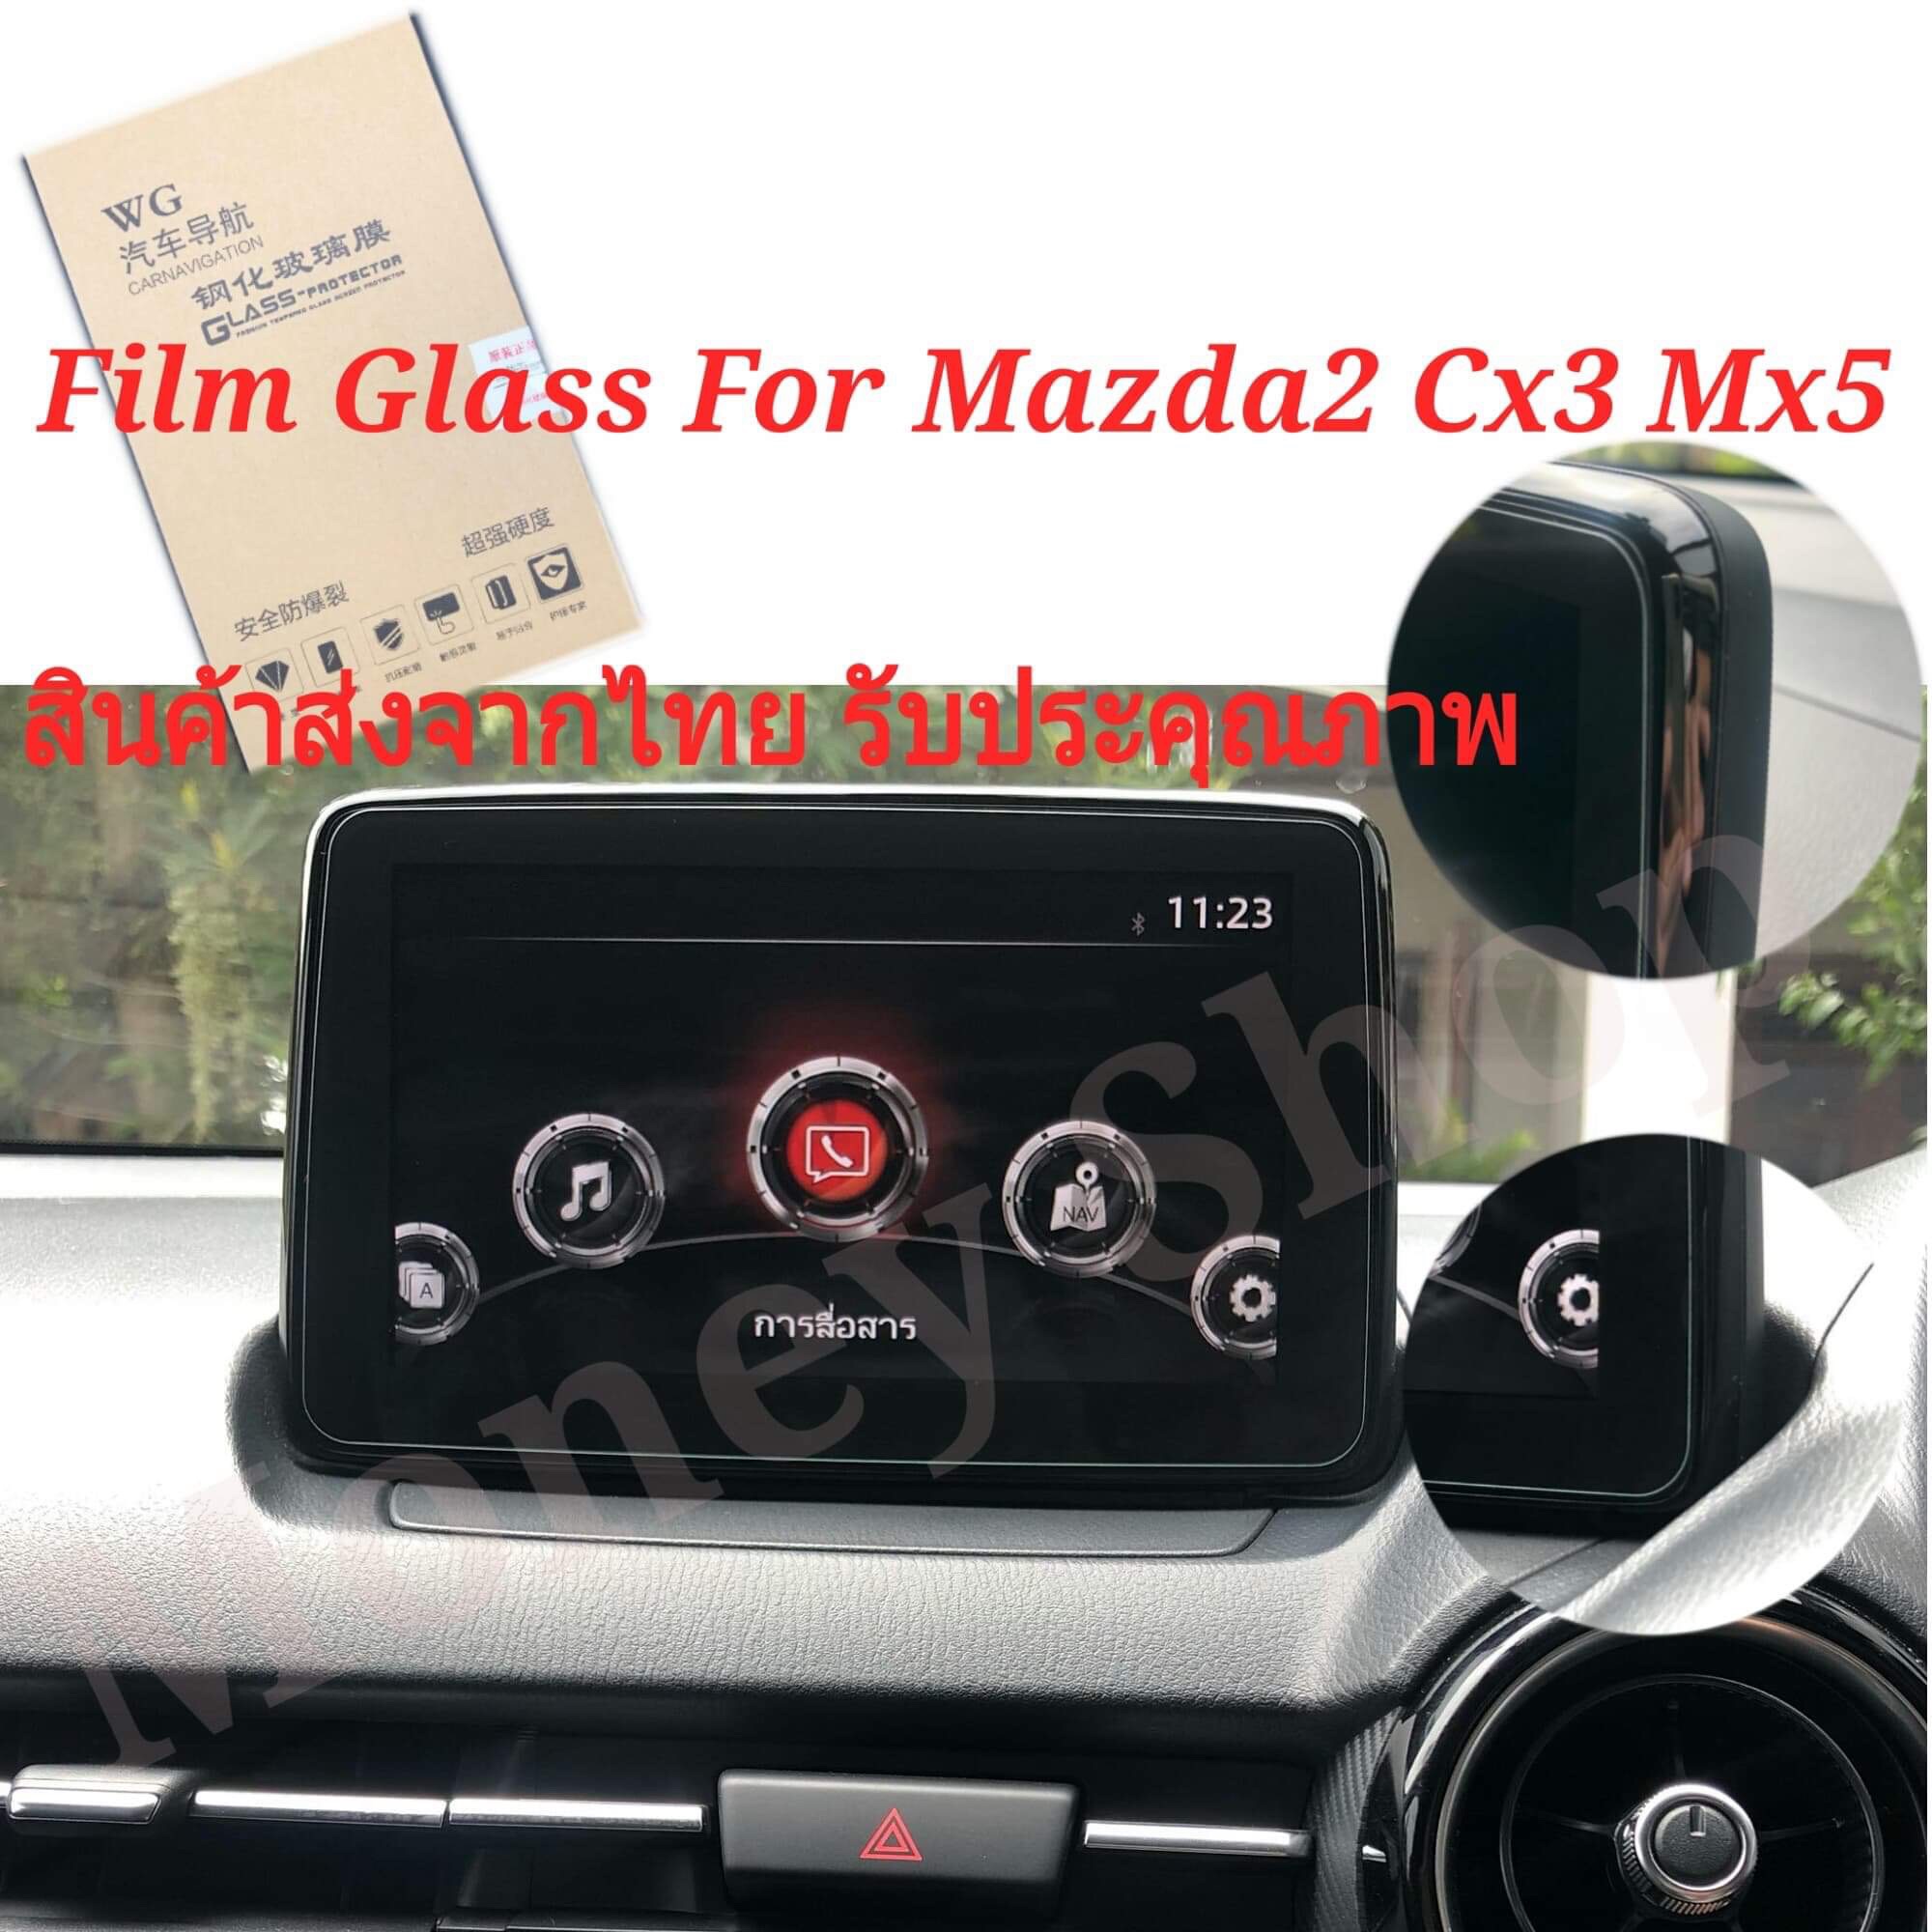 ส่งจากไทย  ฟิล์มกระจกติดจอรถ Mazda2 Skyactiv , Mazda Cx-3 , Mazda Mx-5 ตรงรุ่น Film Glass For Mazda2